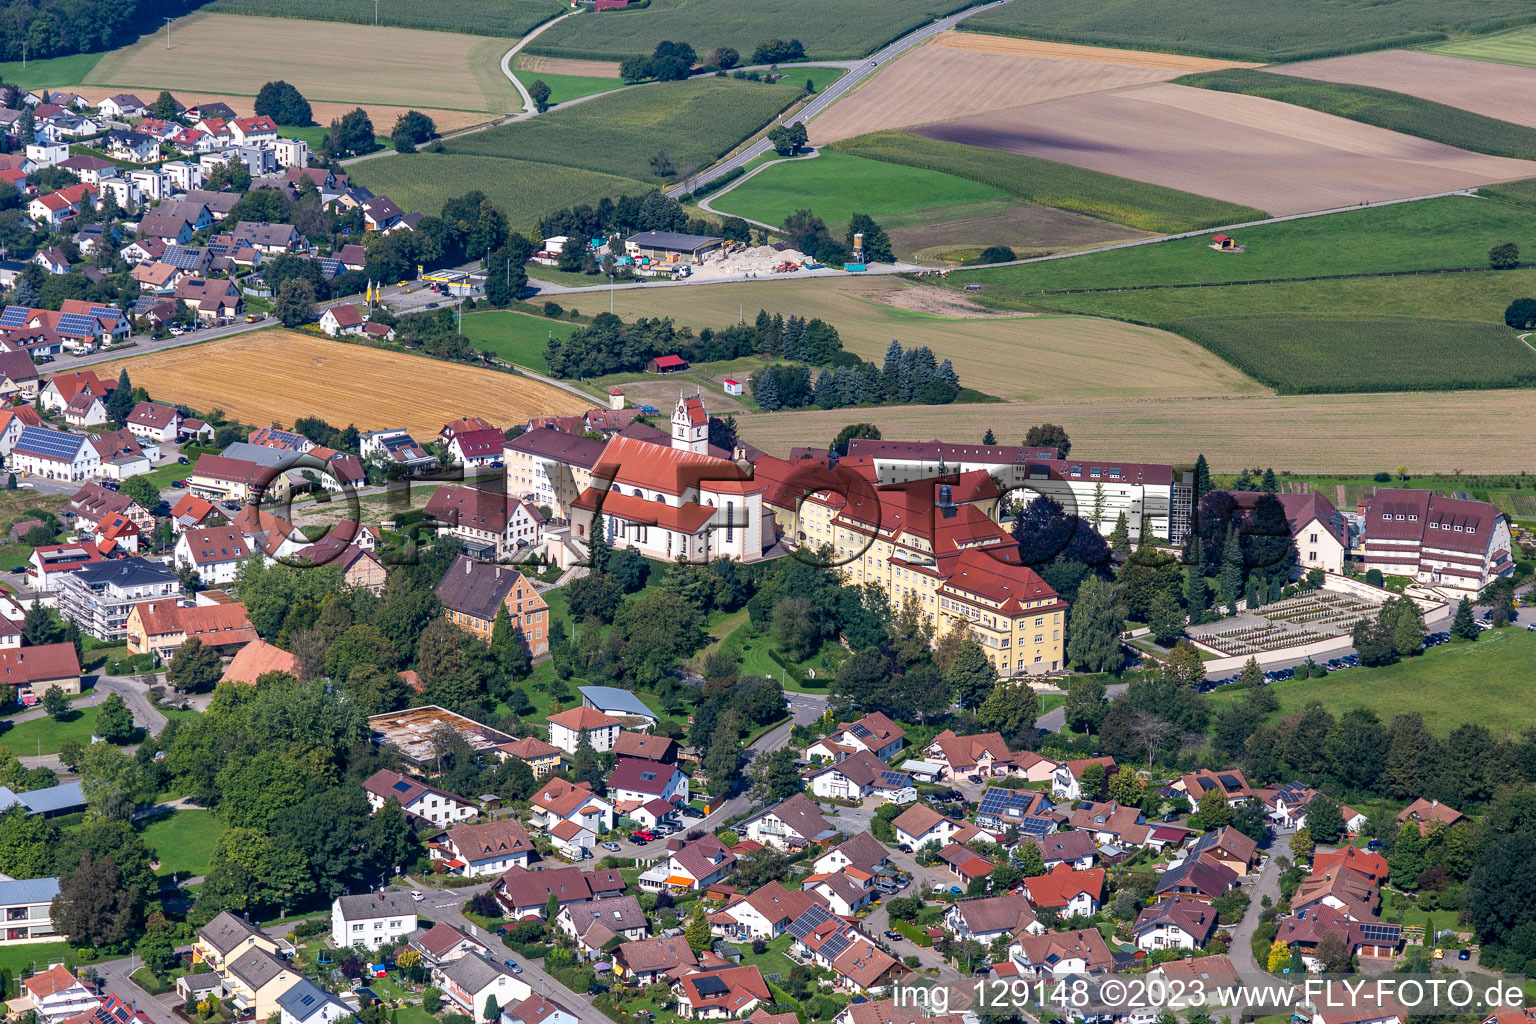 Vue aérienne de Ensemble immobilier du monastère Reute à le quartier Reute in Bad Waldsee dans le département Bade-Wurtemberg, Allemagne